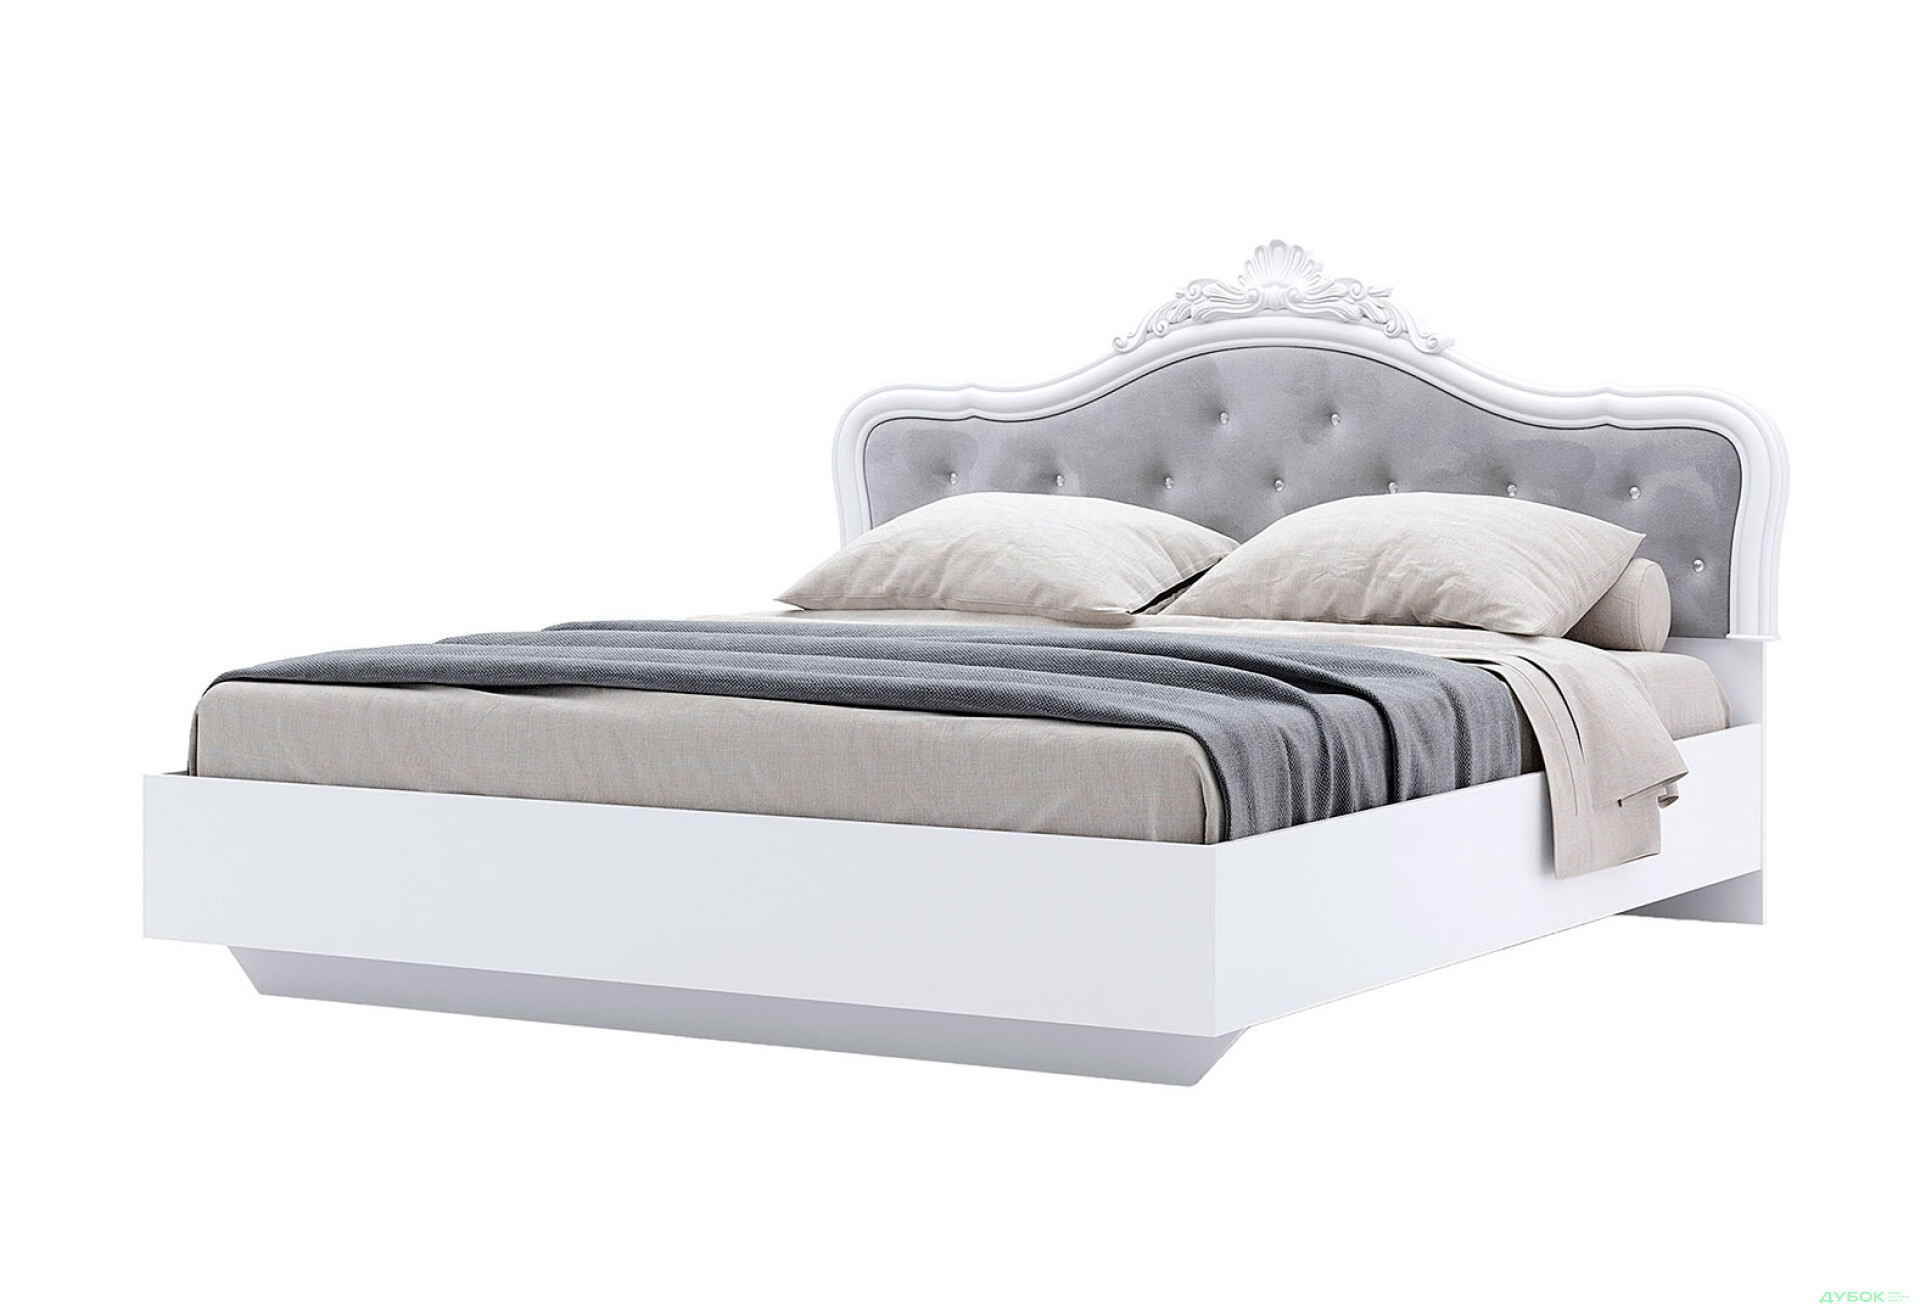 Фото 1 - Кровать MiroMark Луиза (без вклада) 180х200 см с короной, белая